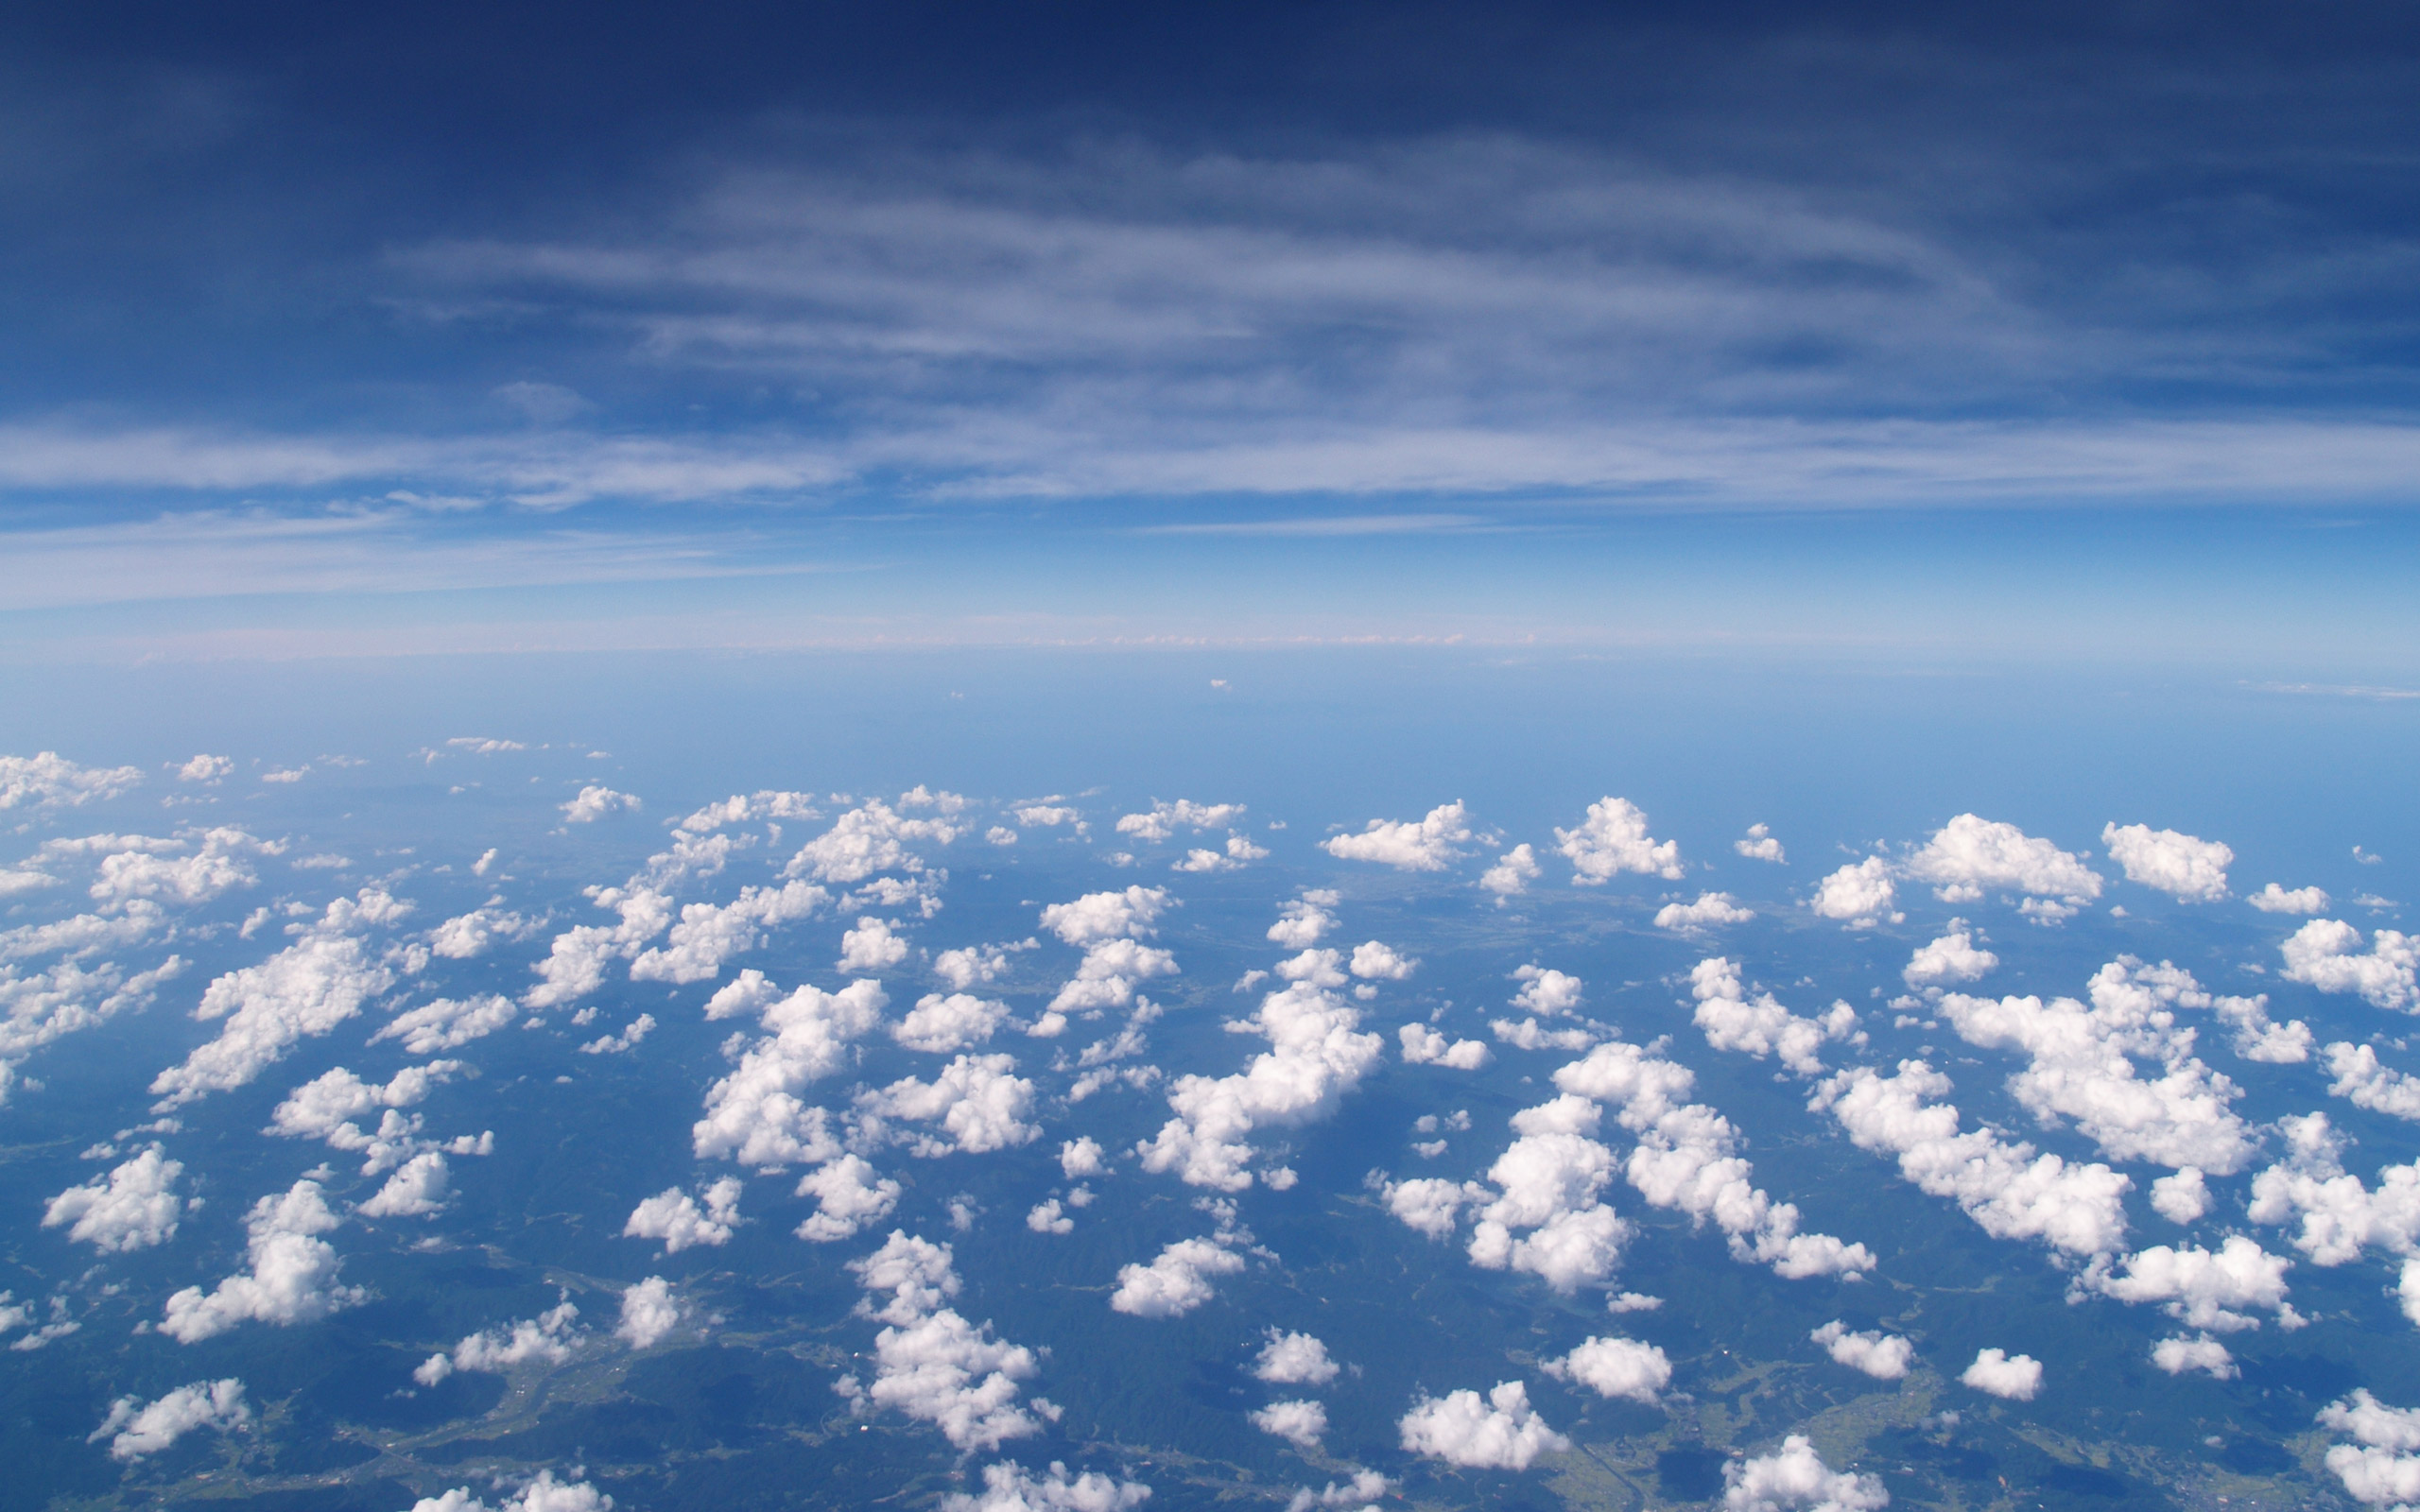 空の写真 高解像度 高画質の無料壁紙 高度一万ﾒｰﾄﾙ 上空の景色